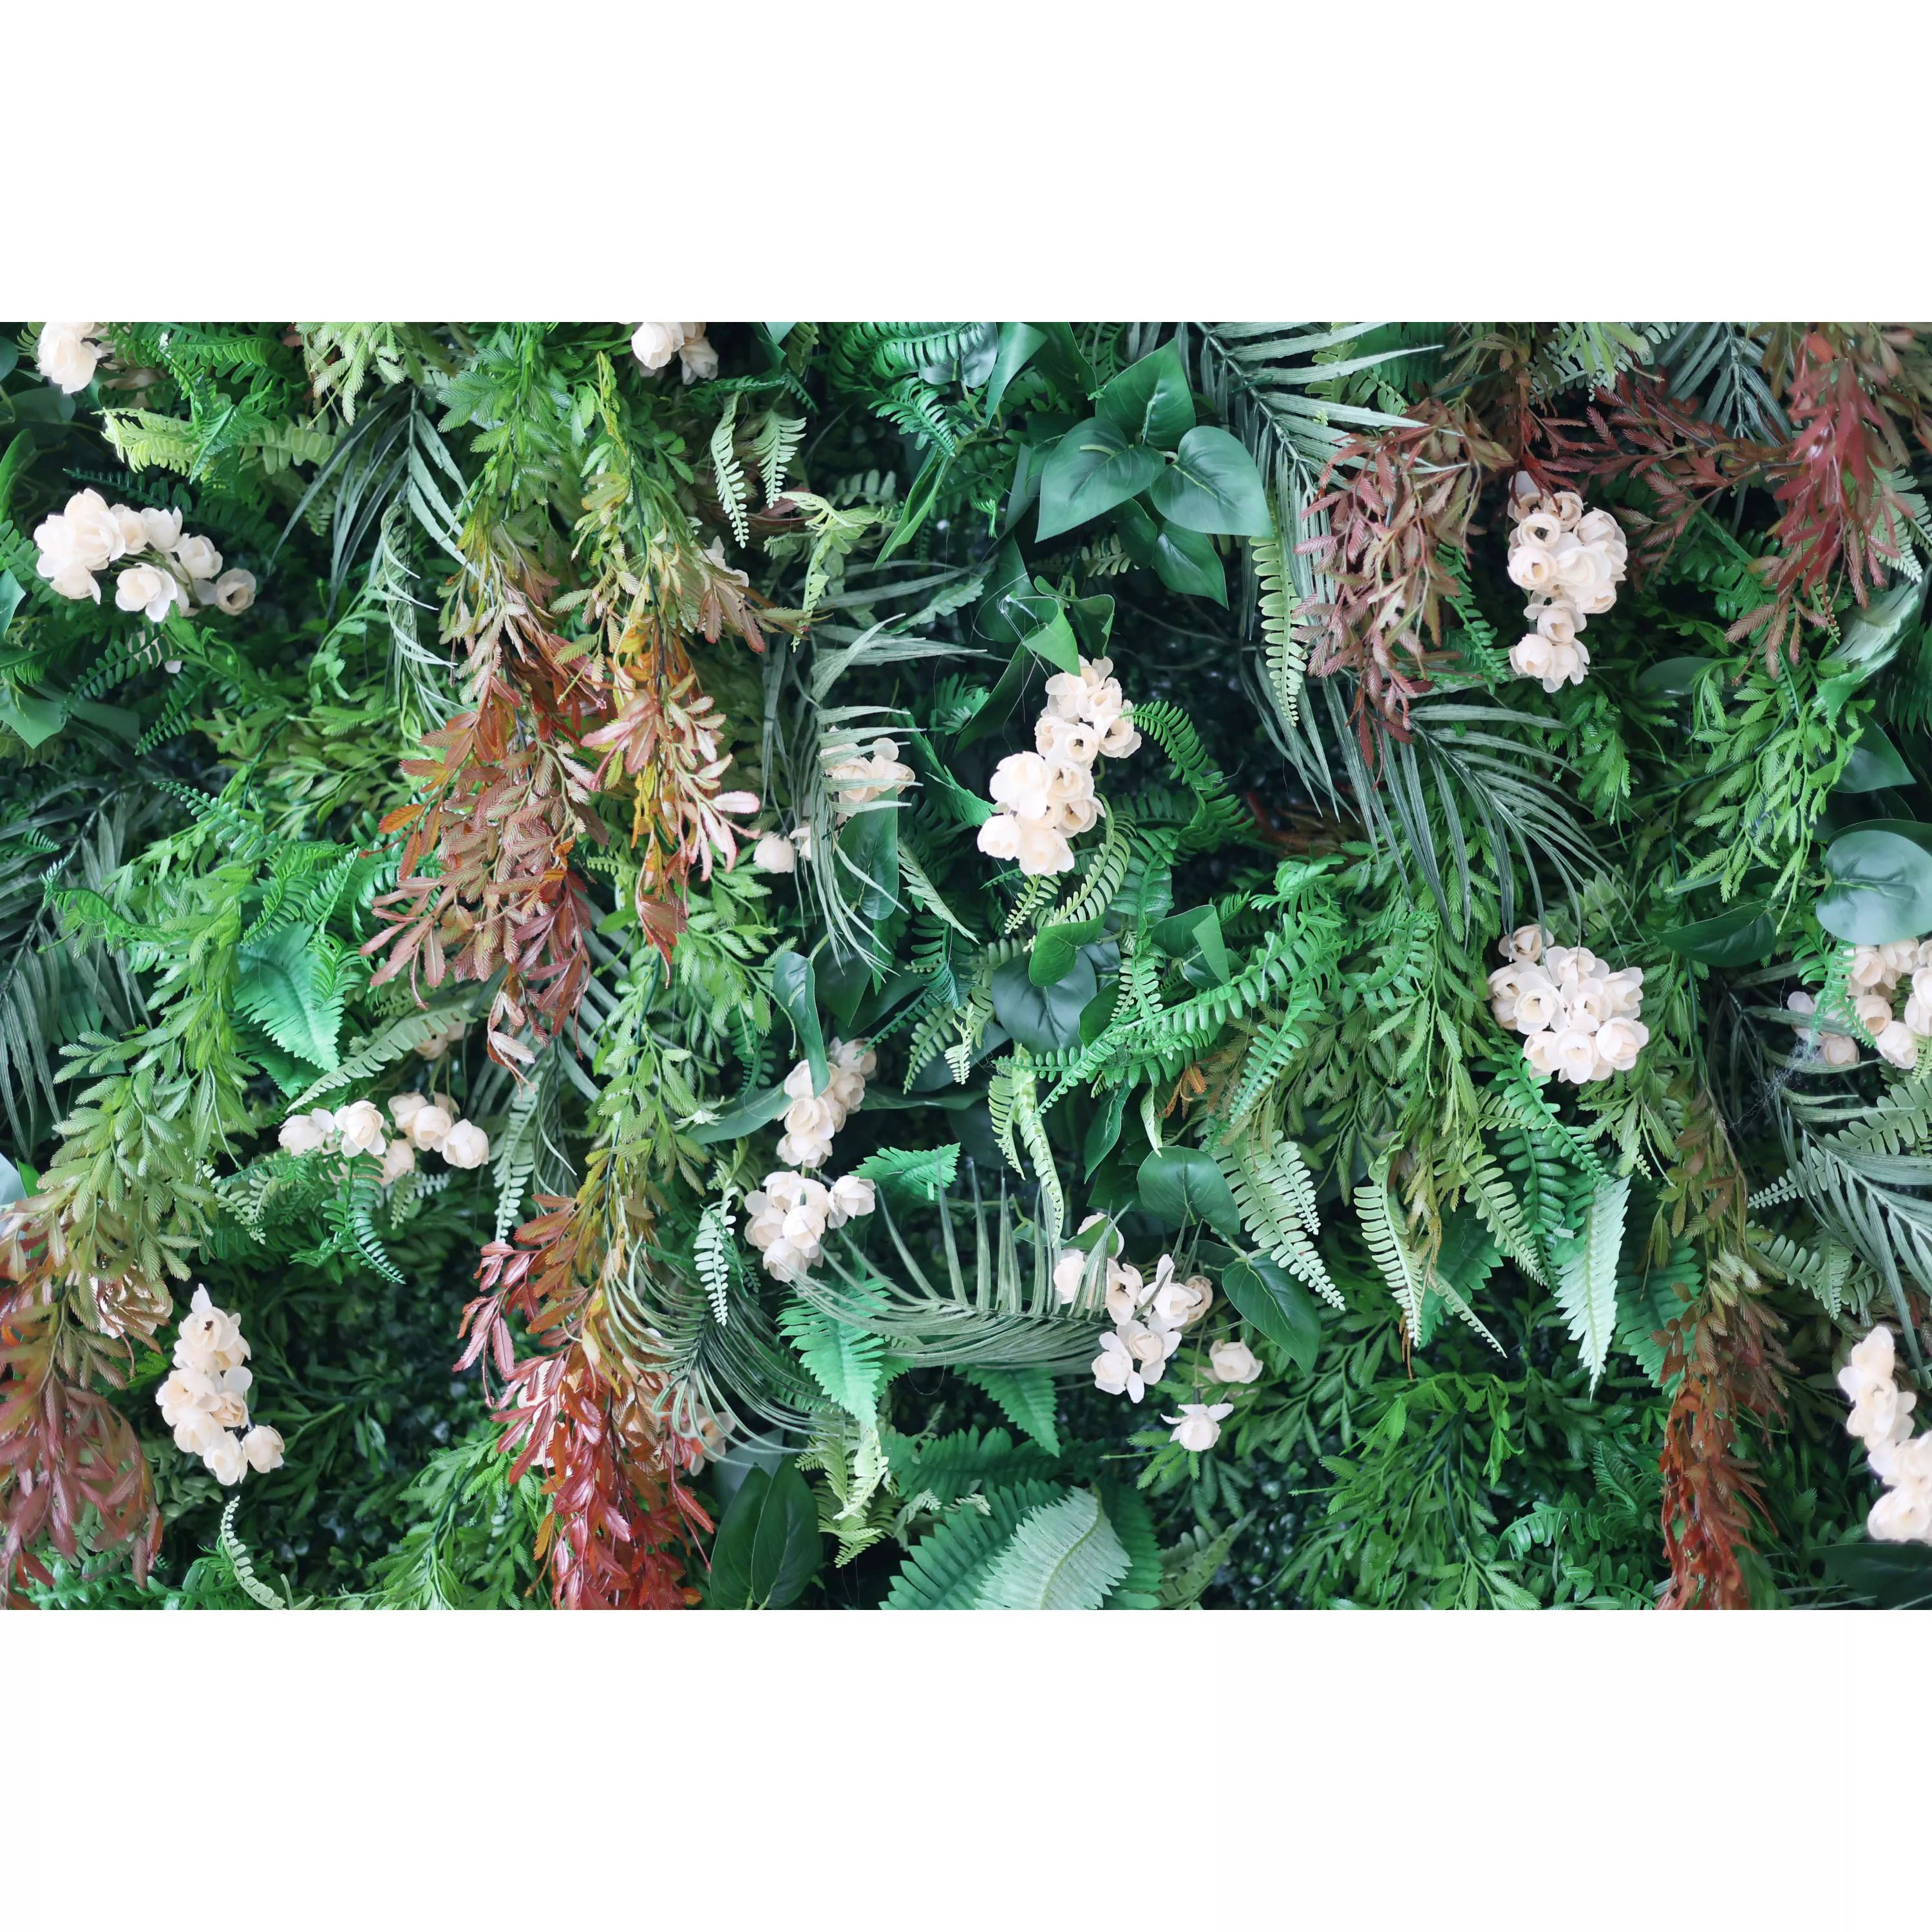 زهور فالار جدار الغابات الاستوائية المورقة مع أزهار عاجية حساسة: الغوص في احتضان الطبيعة-الانصهار المثالي للخضرة والزهور